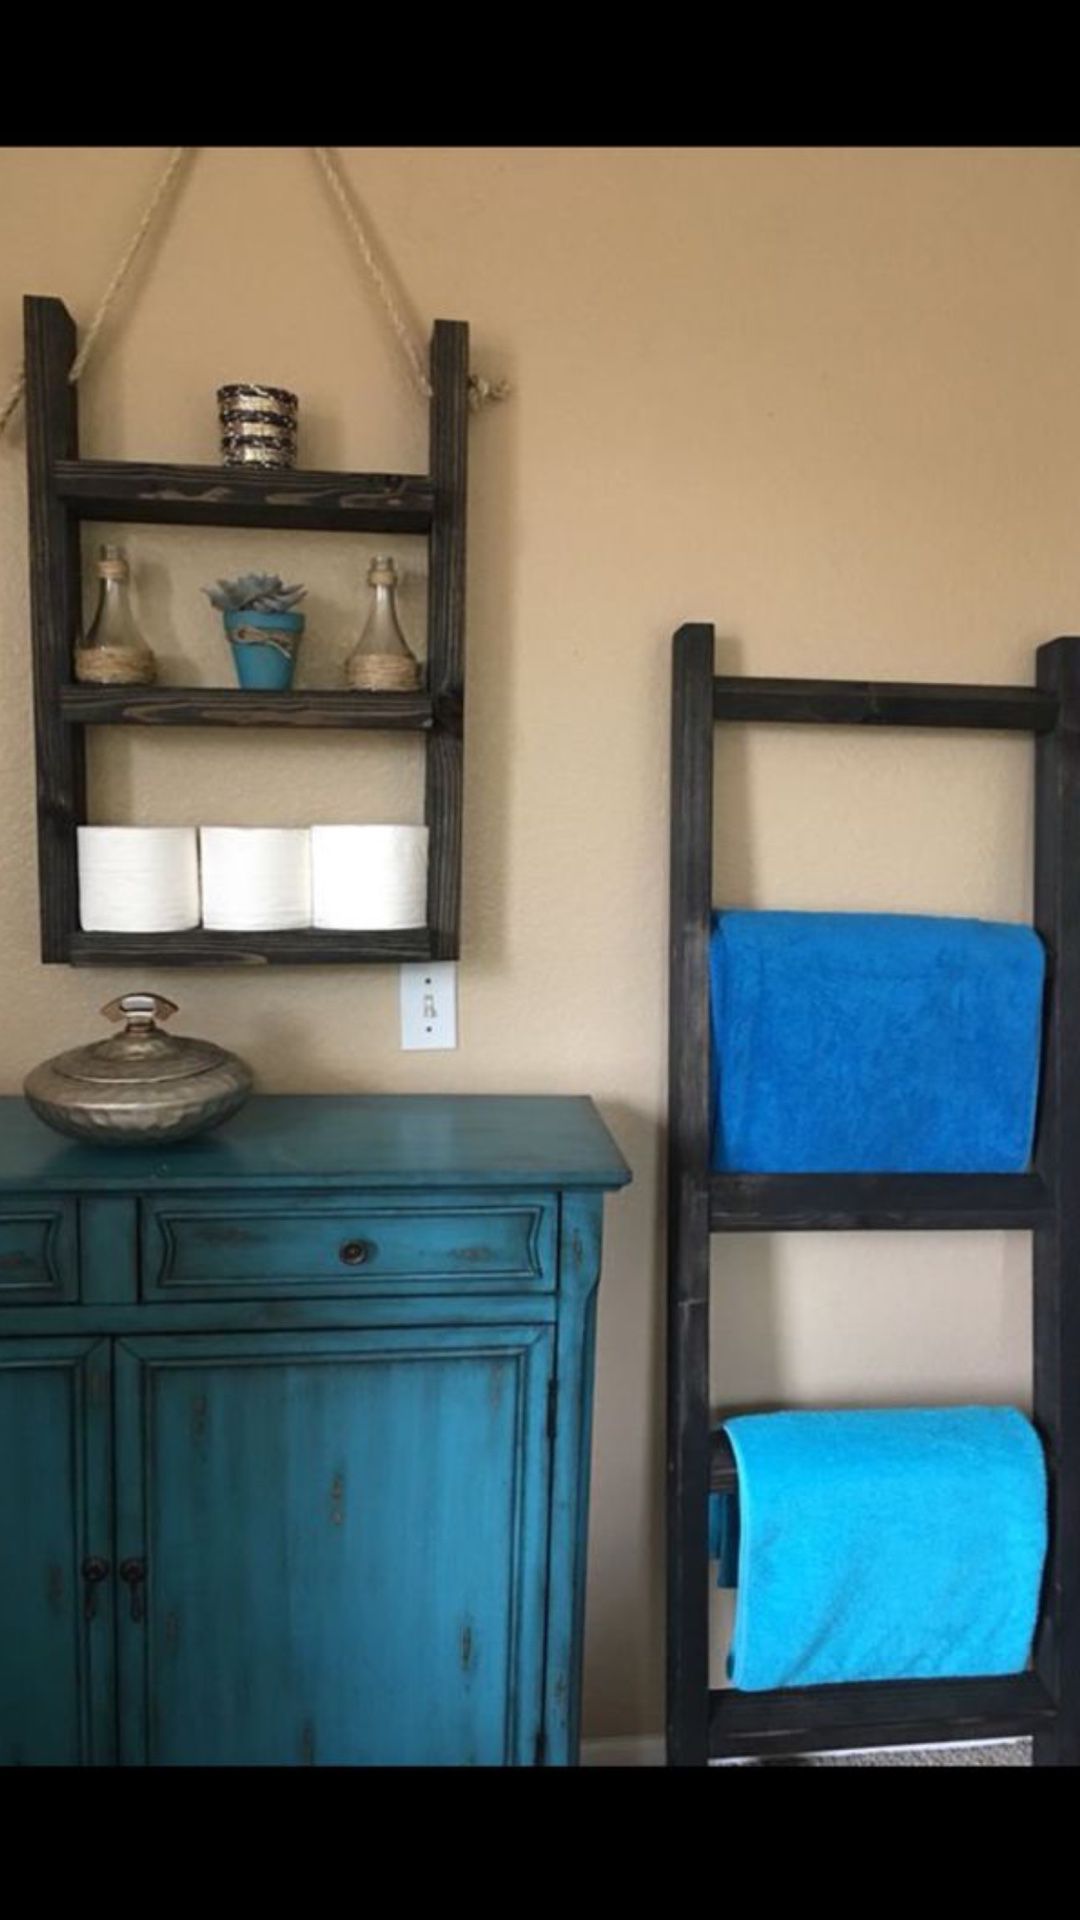 Rustic ladder shelf & blanket / towel ladder set